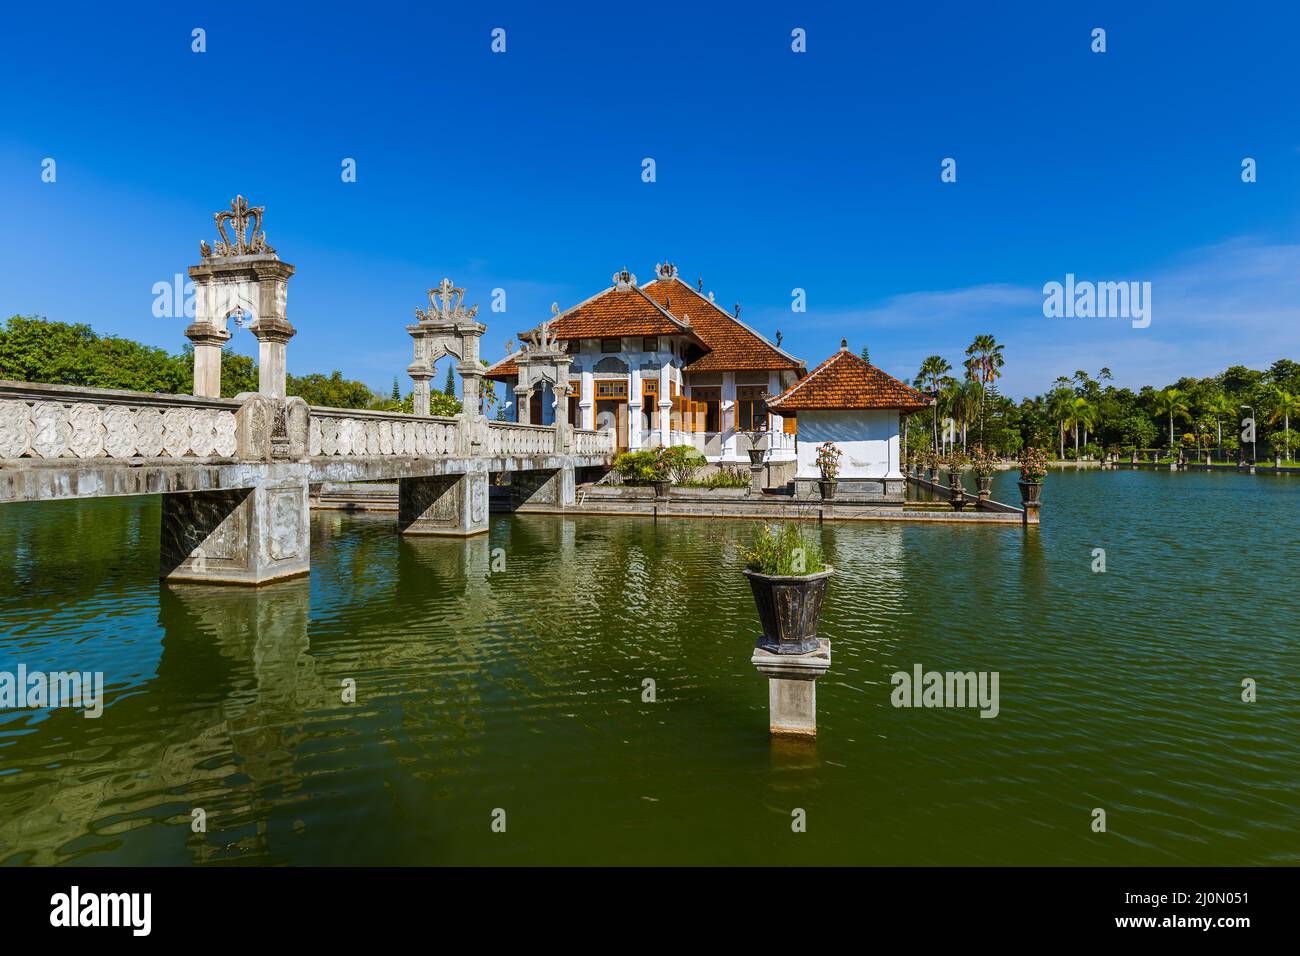 Water Palace Taman Ujung in Bali Island Indonesia Stock Photo